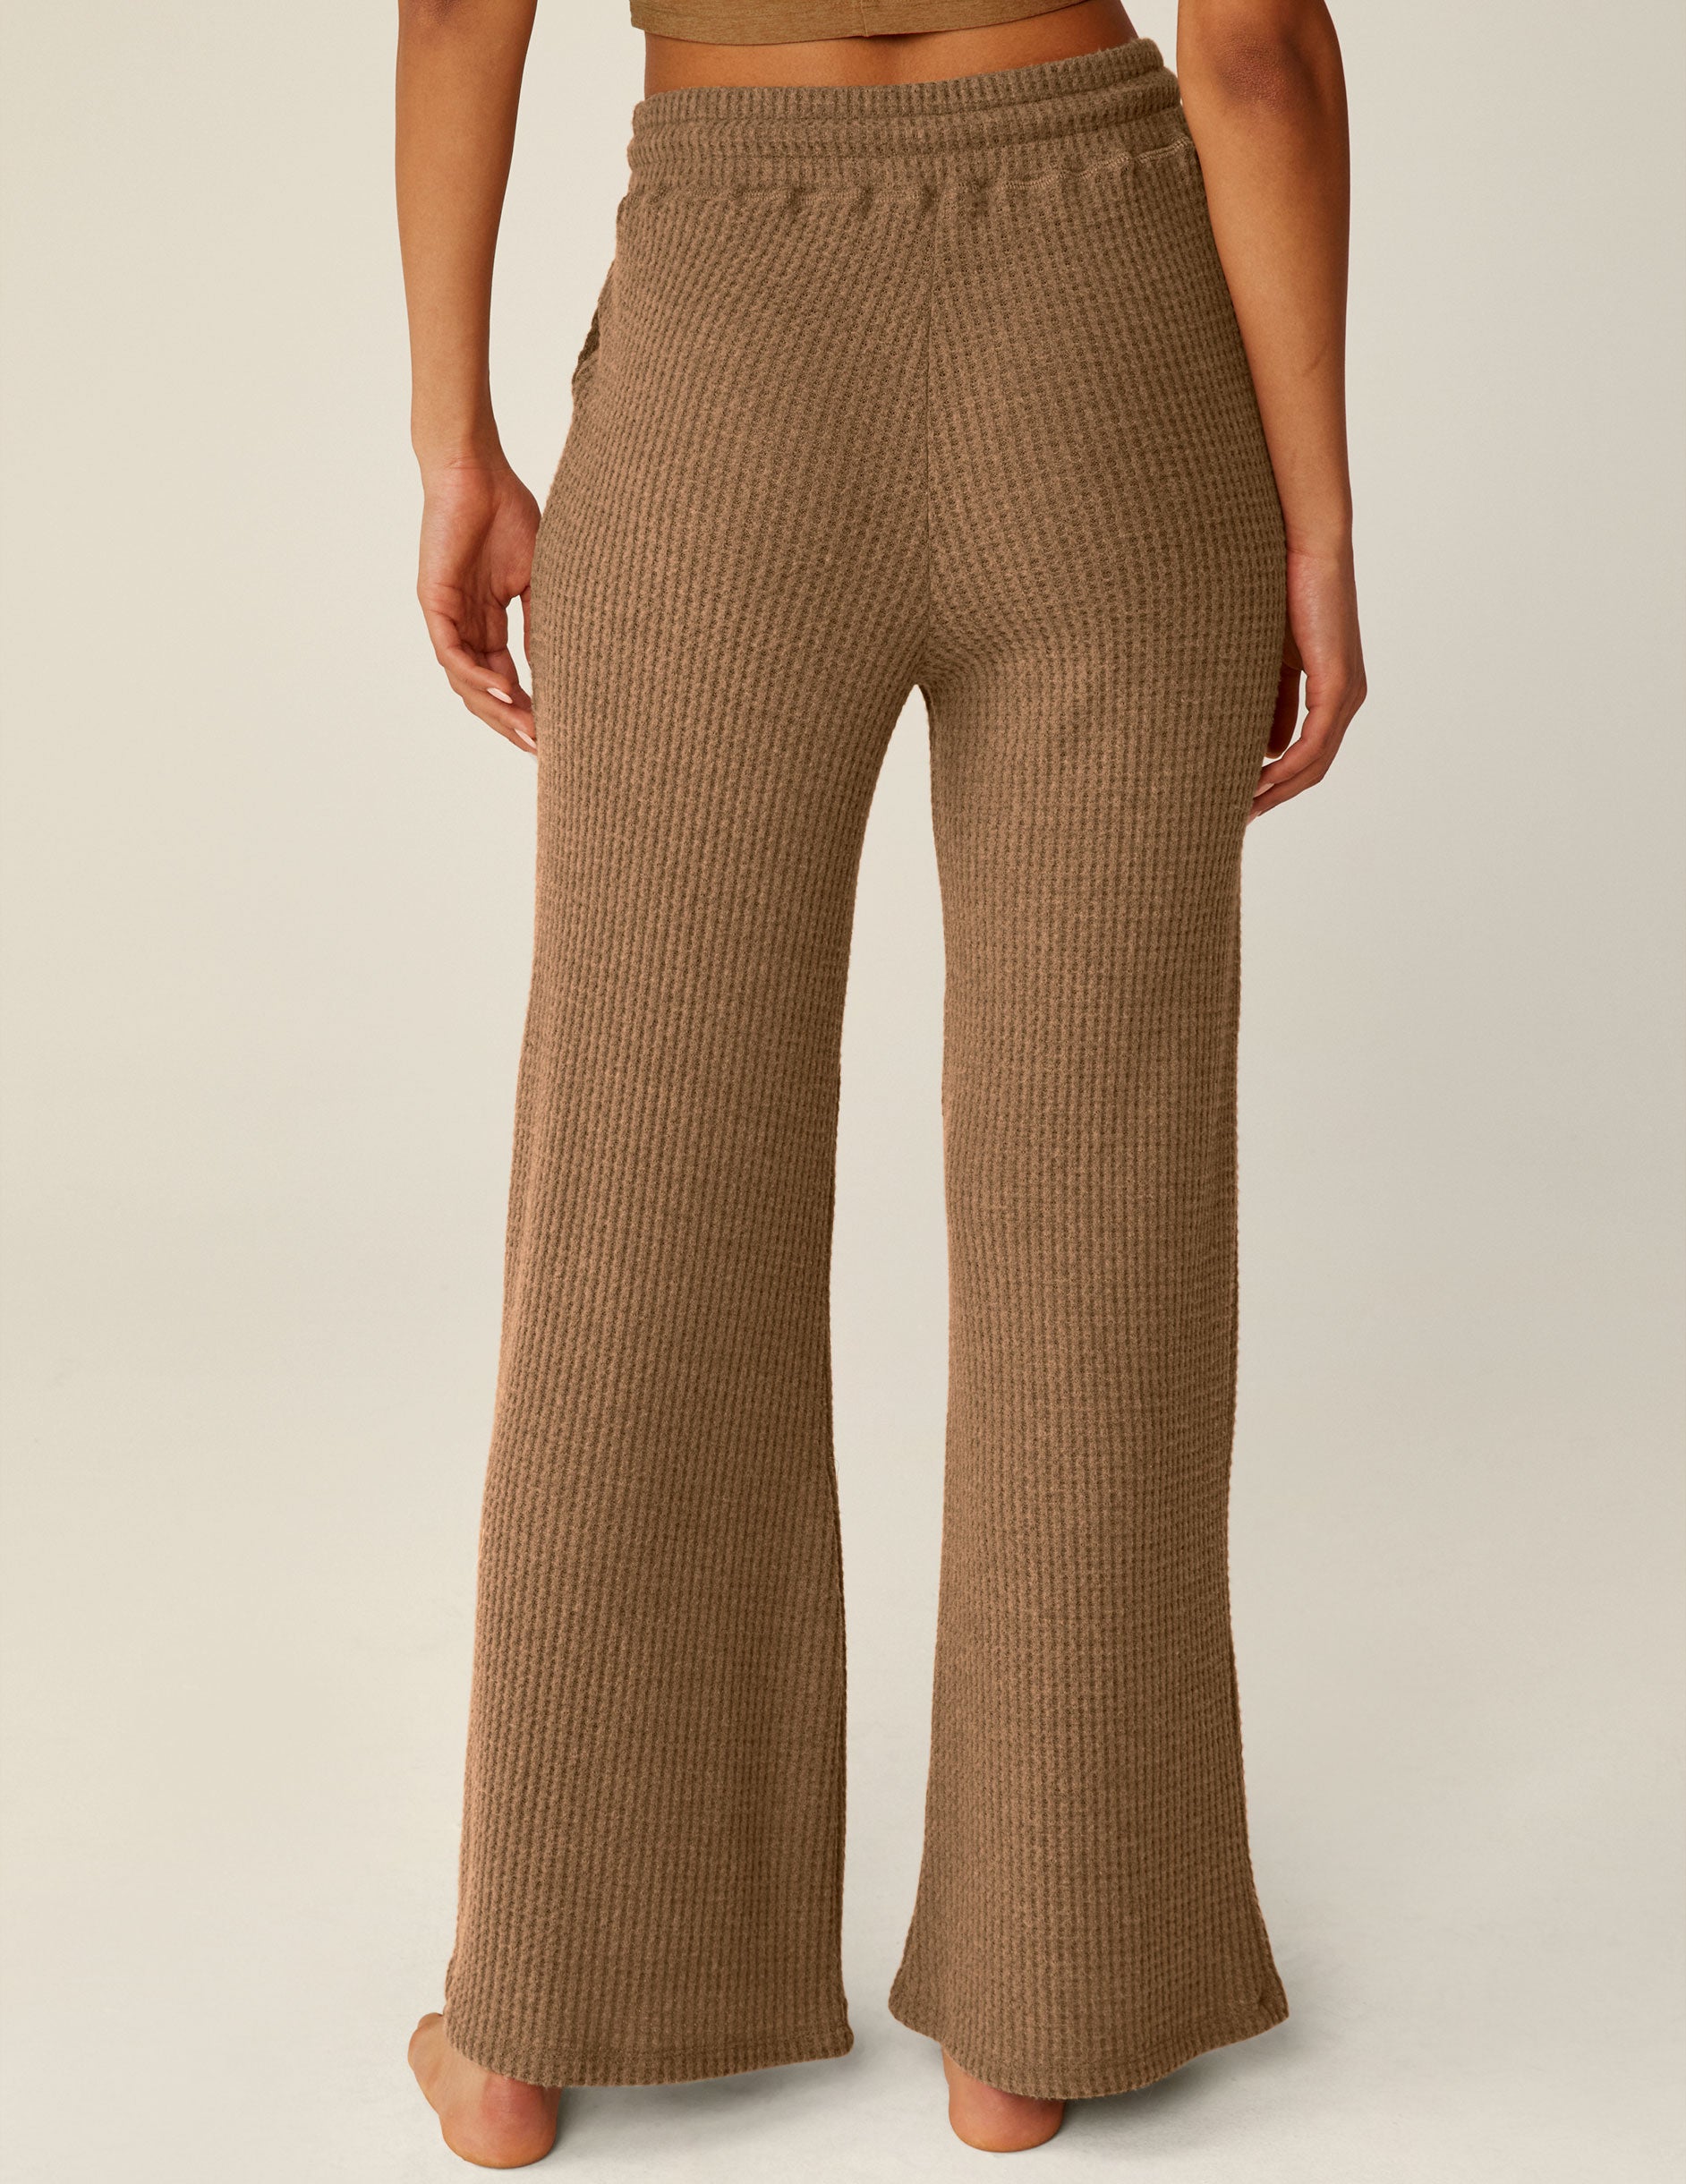 brown waffle knit pants with drawstring at waistband. 